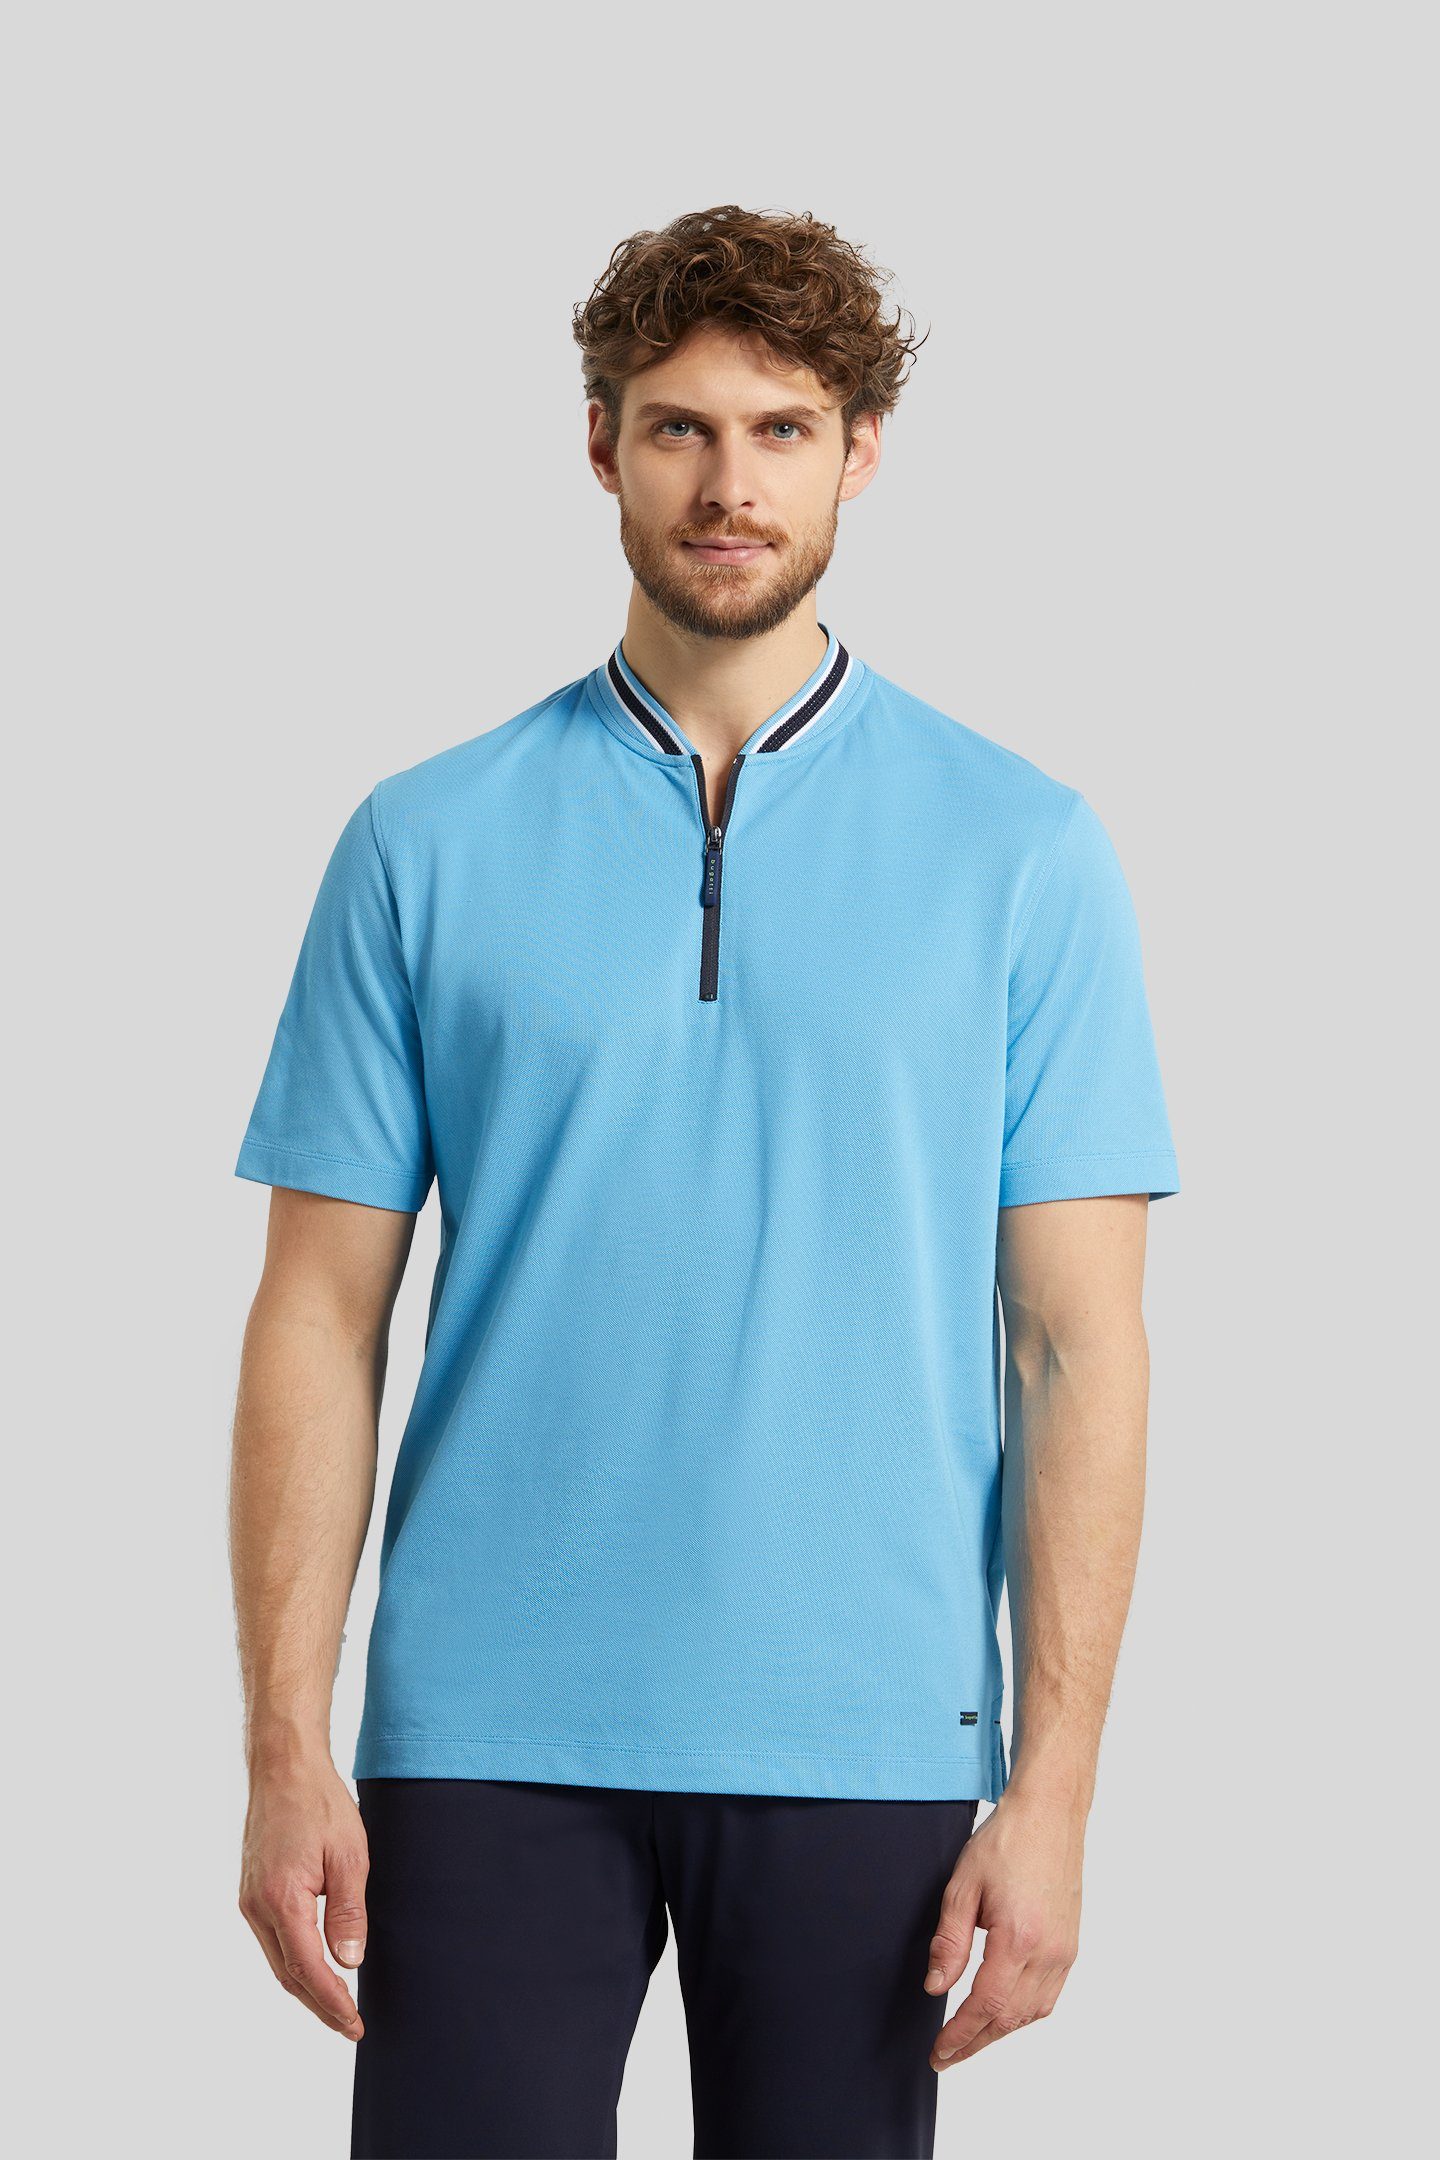 bugatti Poloshirt mit einem Collegekragen blau | Poloshirts